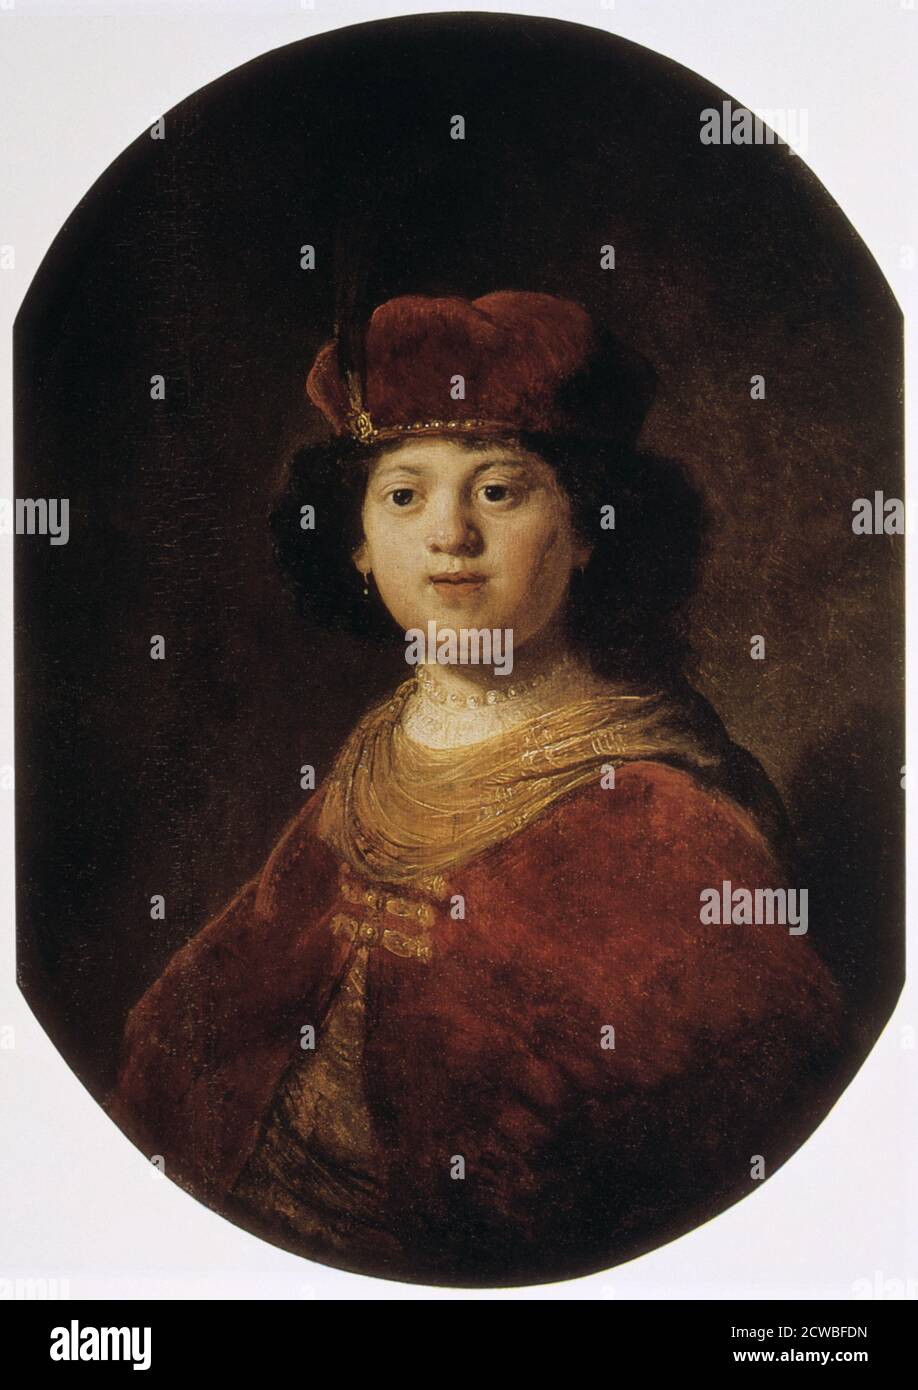 Ritratto di un ragazzo, 17 ° secolo da Rembrandt Harmensz van Rijn. Dal Museo dell'Hermitage, San Pietroburgo, Russia. Foto Stock